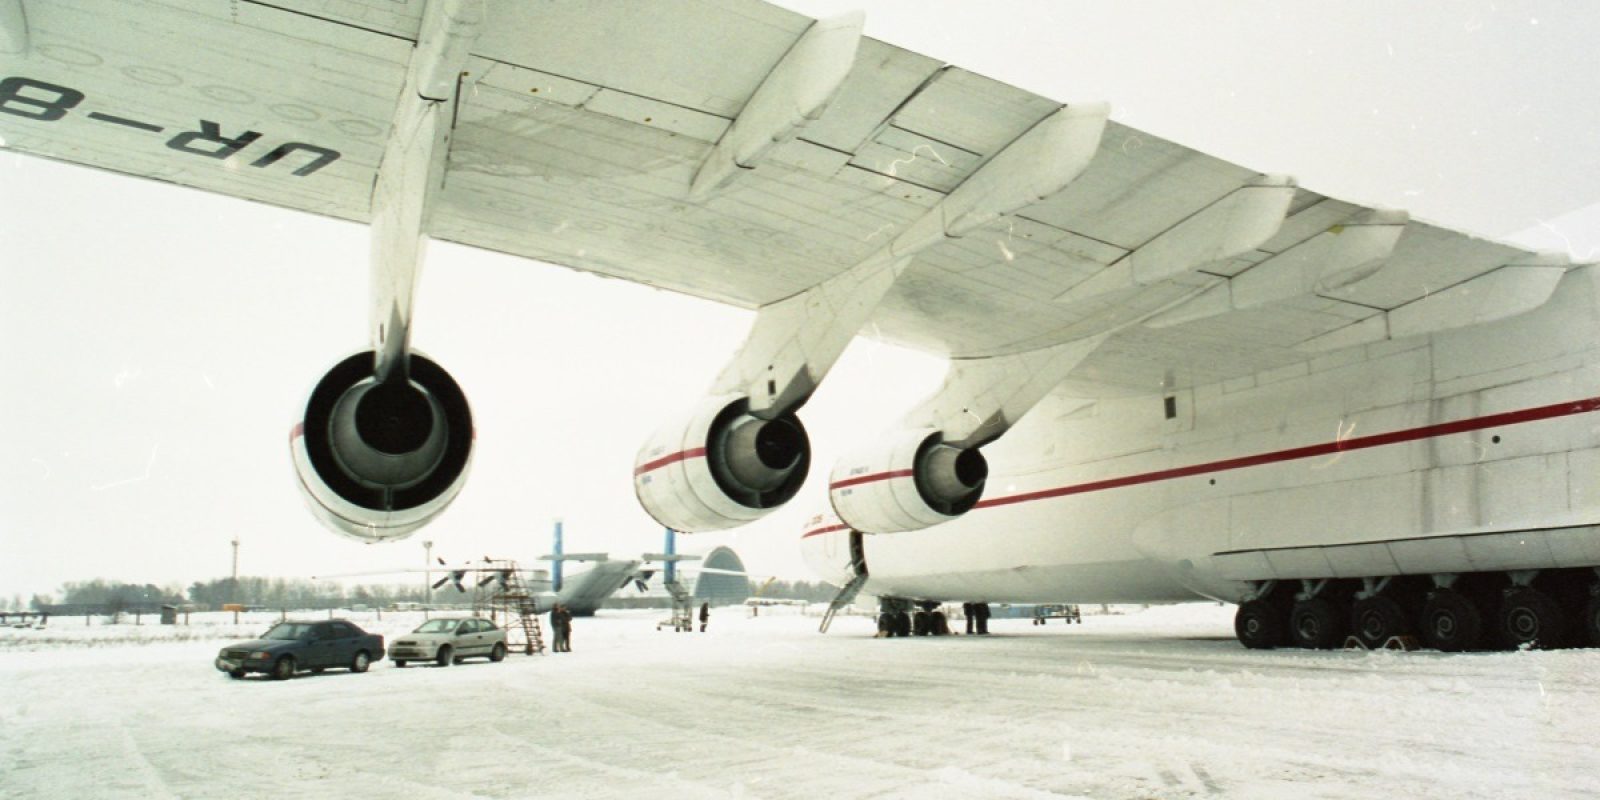 Achteraan links is de loods zichtbaar die gebruikt werd voor de stalling van de An-225. Ook An-124en kregen onderhoud in deze loods, een overkapping die niet volledig kon afgesloten worden. (Foto Frans Van Humbeek)